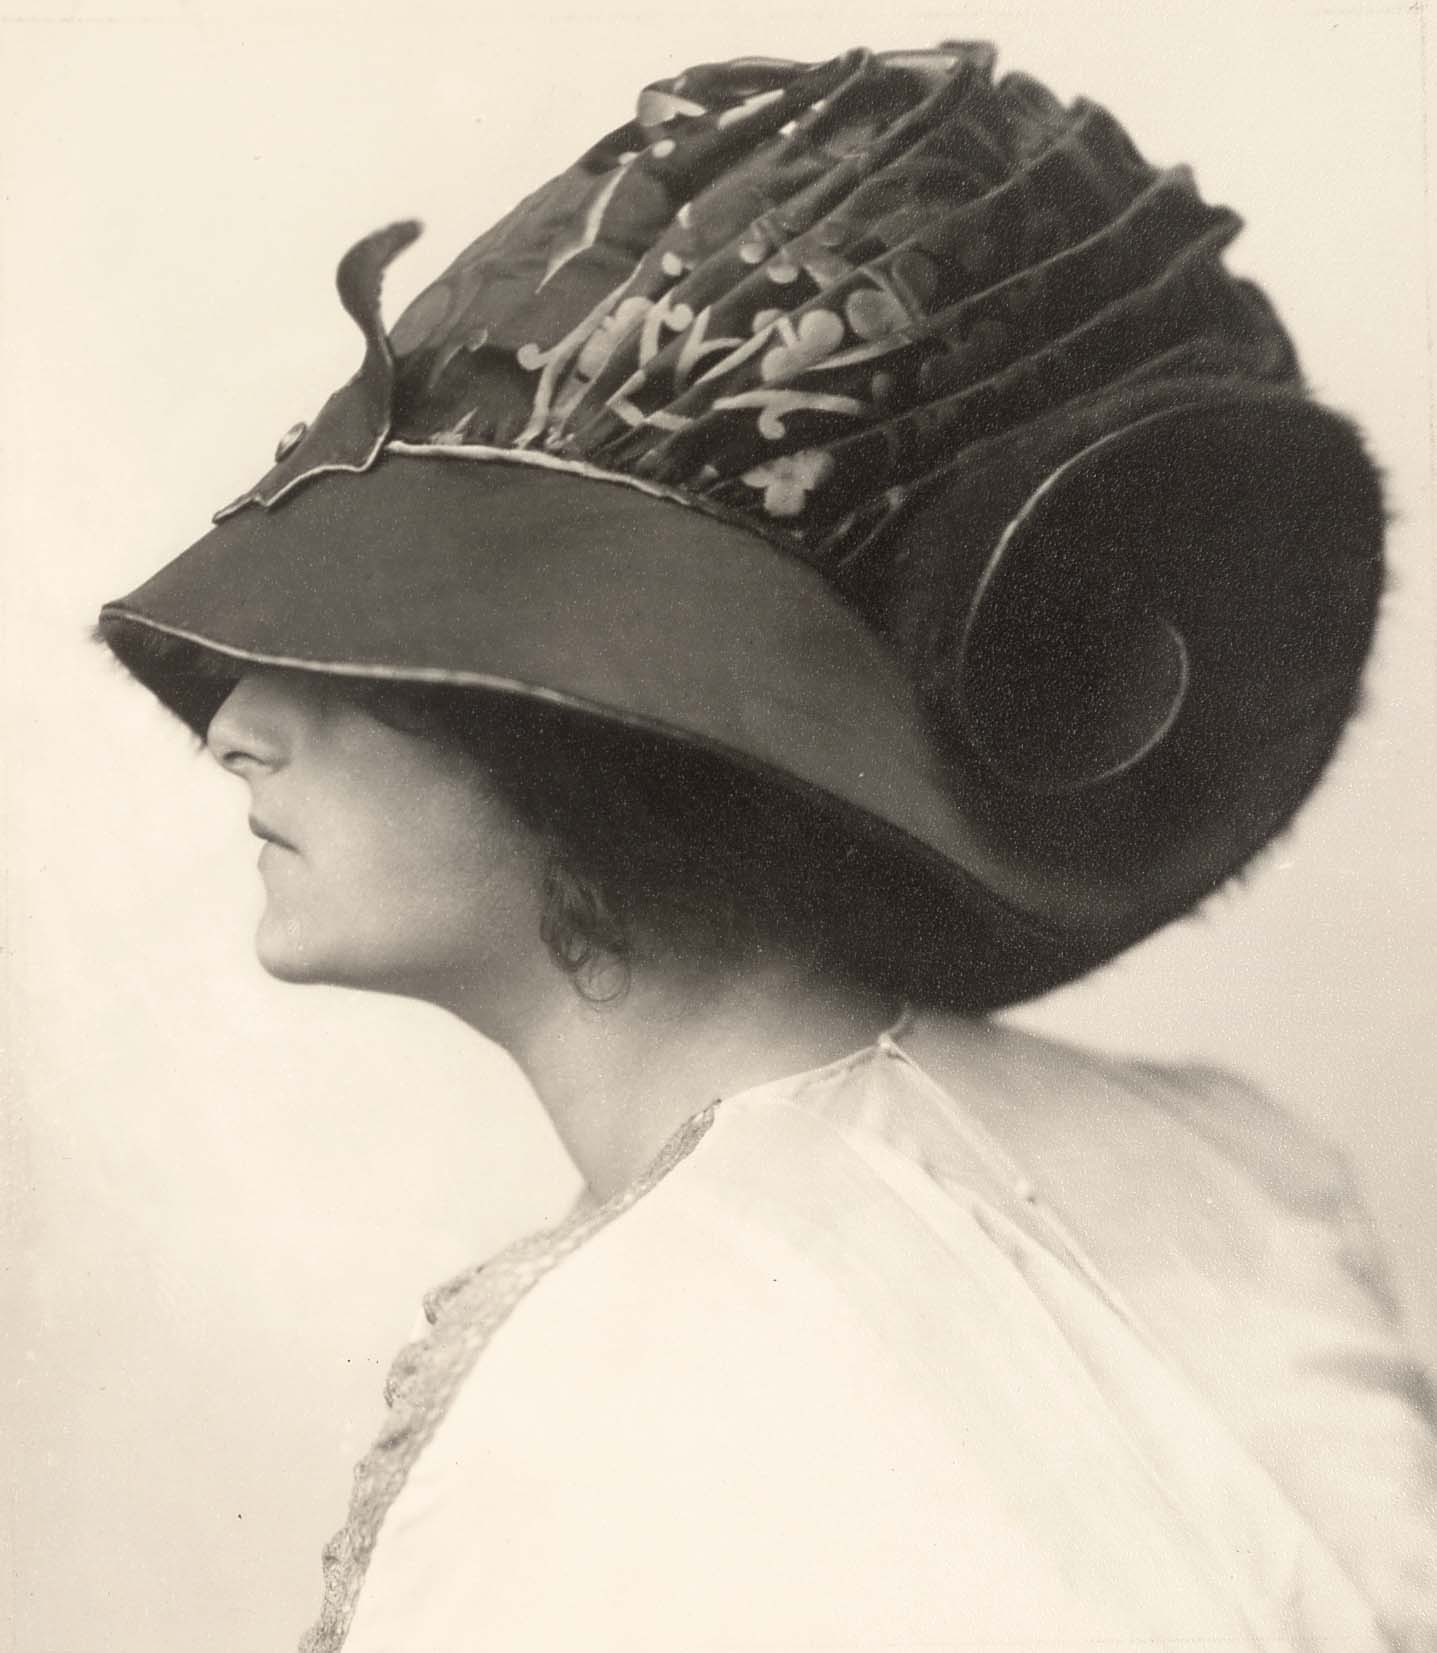 Atelier d’Ora: Helene Jamrich trägt ein Hutmodell des Hauses Zwieback, entworfen von Rudolf Krieser, 1910 (Abzug später), Silbergelatinepapier, 17 x 15 cm, Sammlung Frank, Landesgalerie Linz.